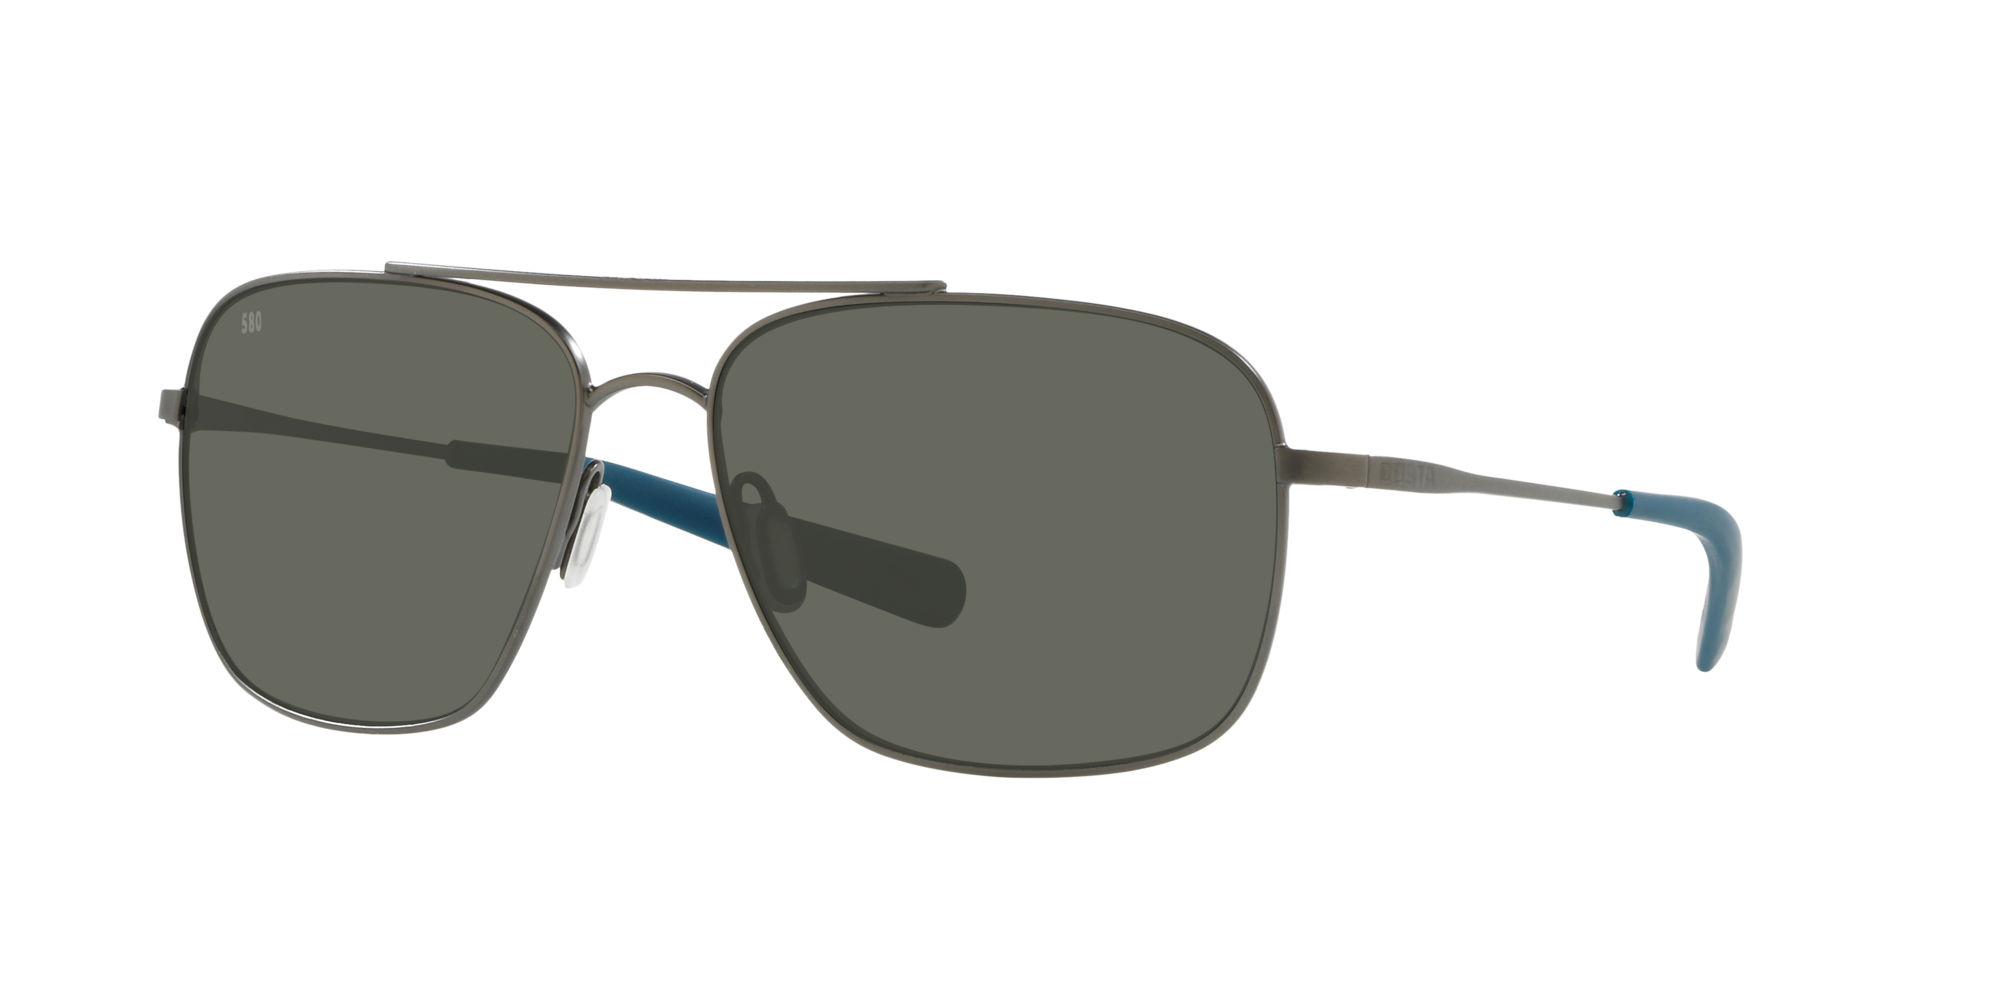 Canaveral Polarized Sunglasses in Gray | Costa Del Mar®